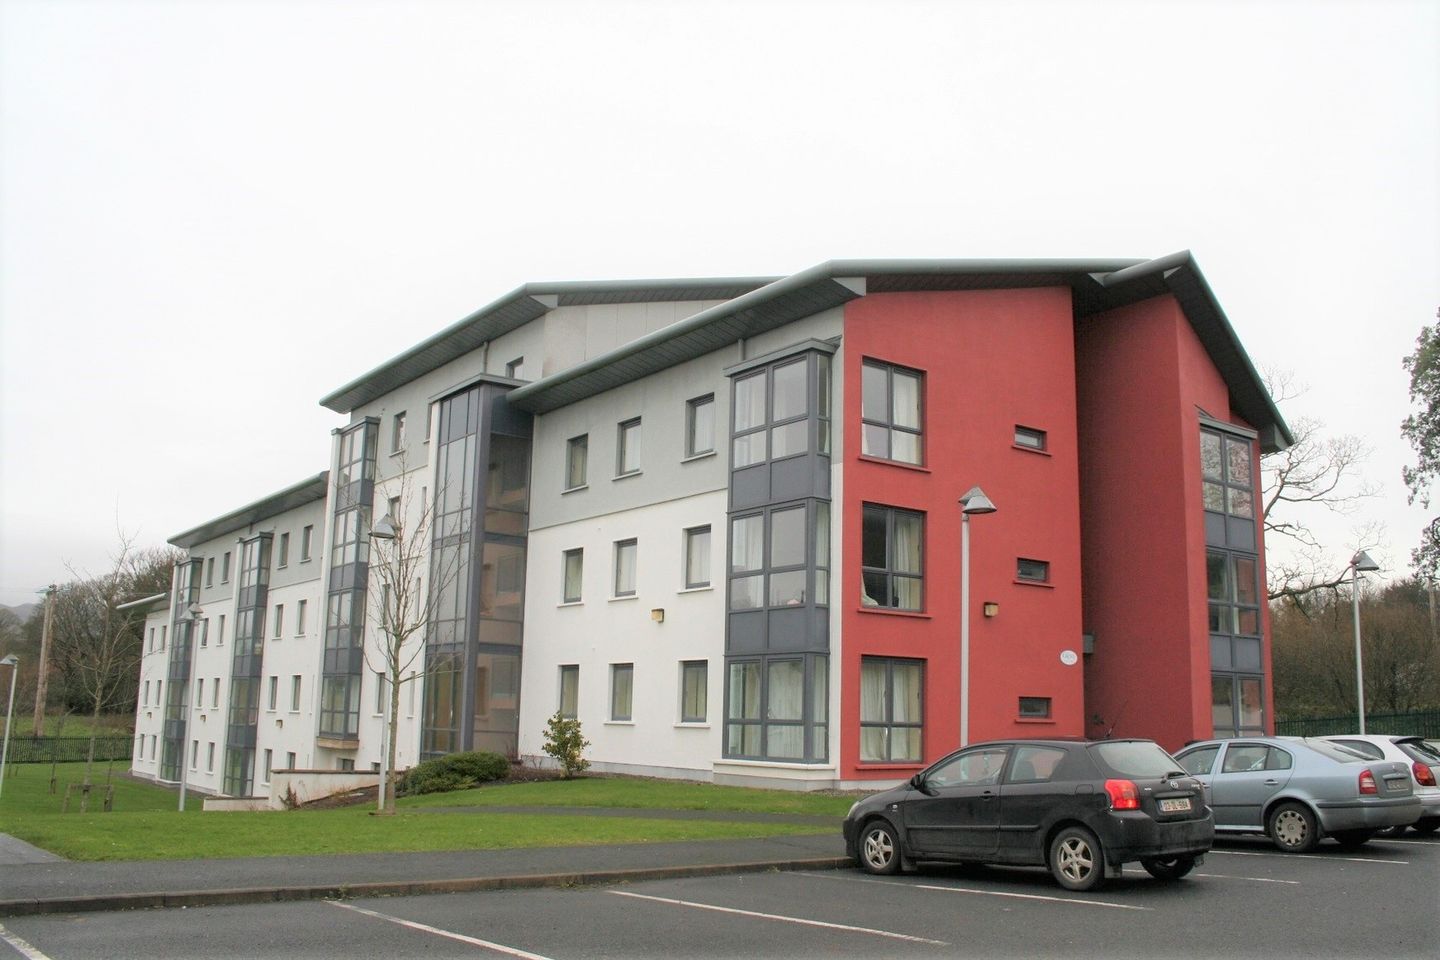 Apartment 30, The Grove, Sligo, Co. Sligo